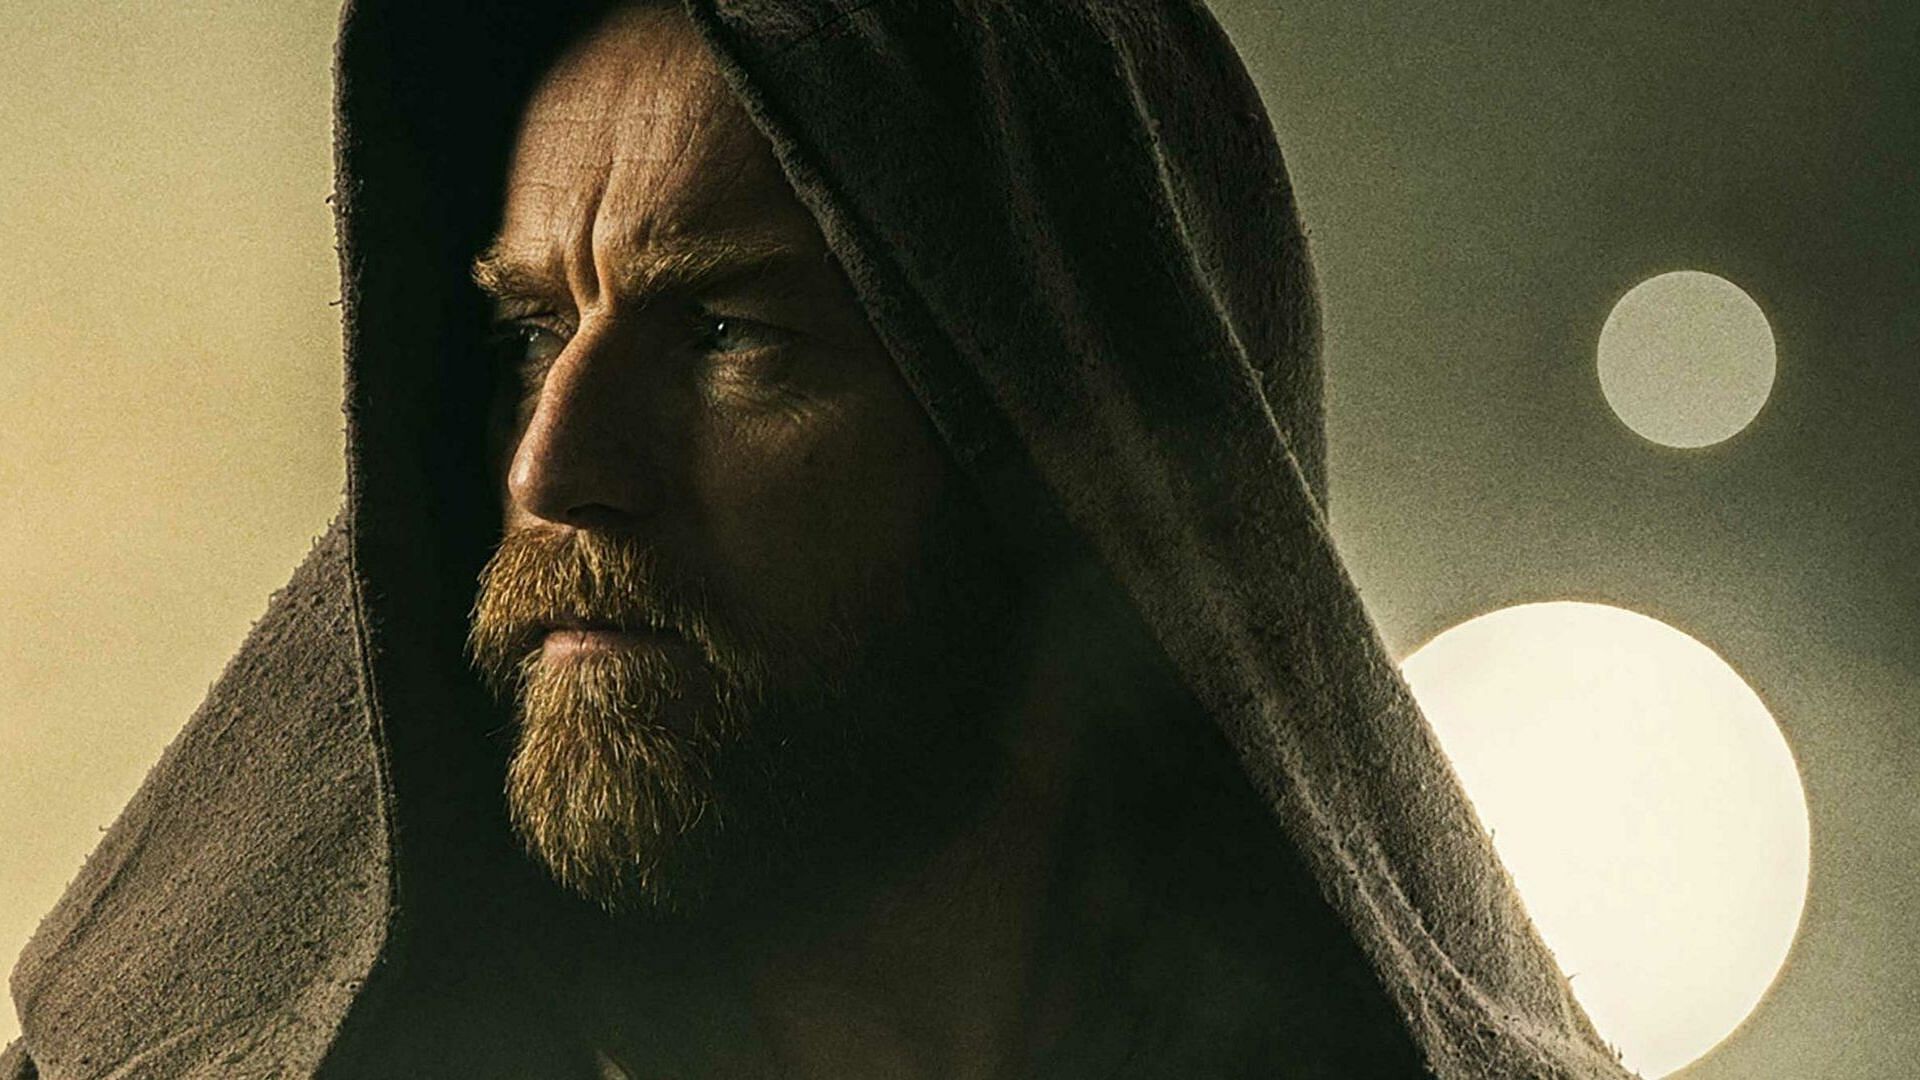 A still from Obi-Wan Kenobi (Image via Disney+)